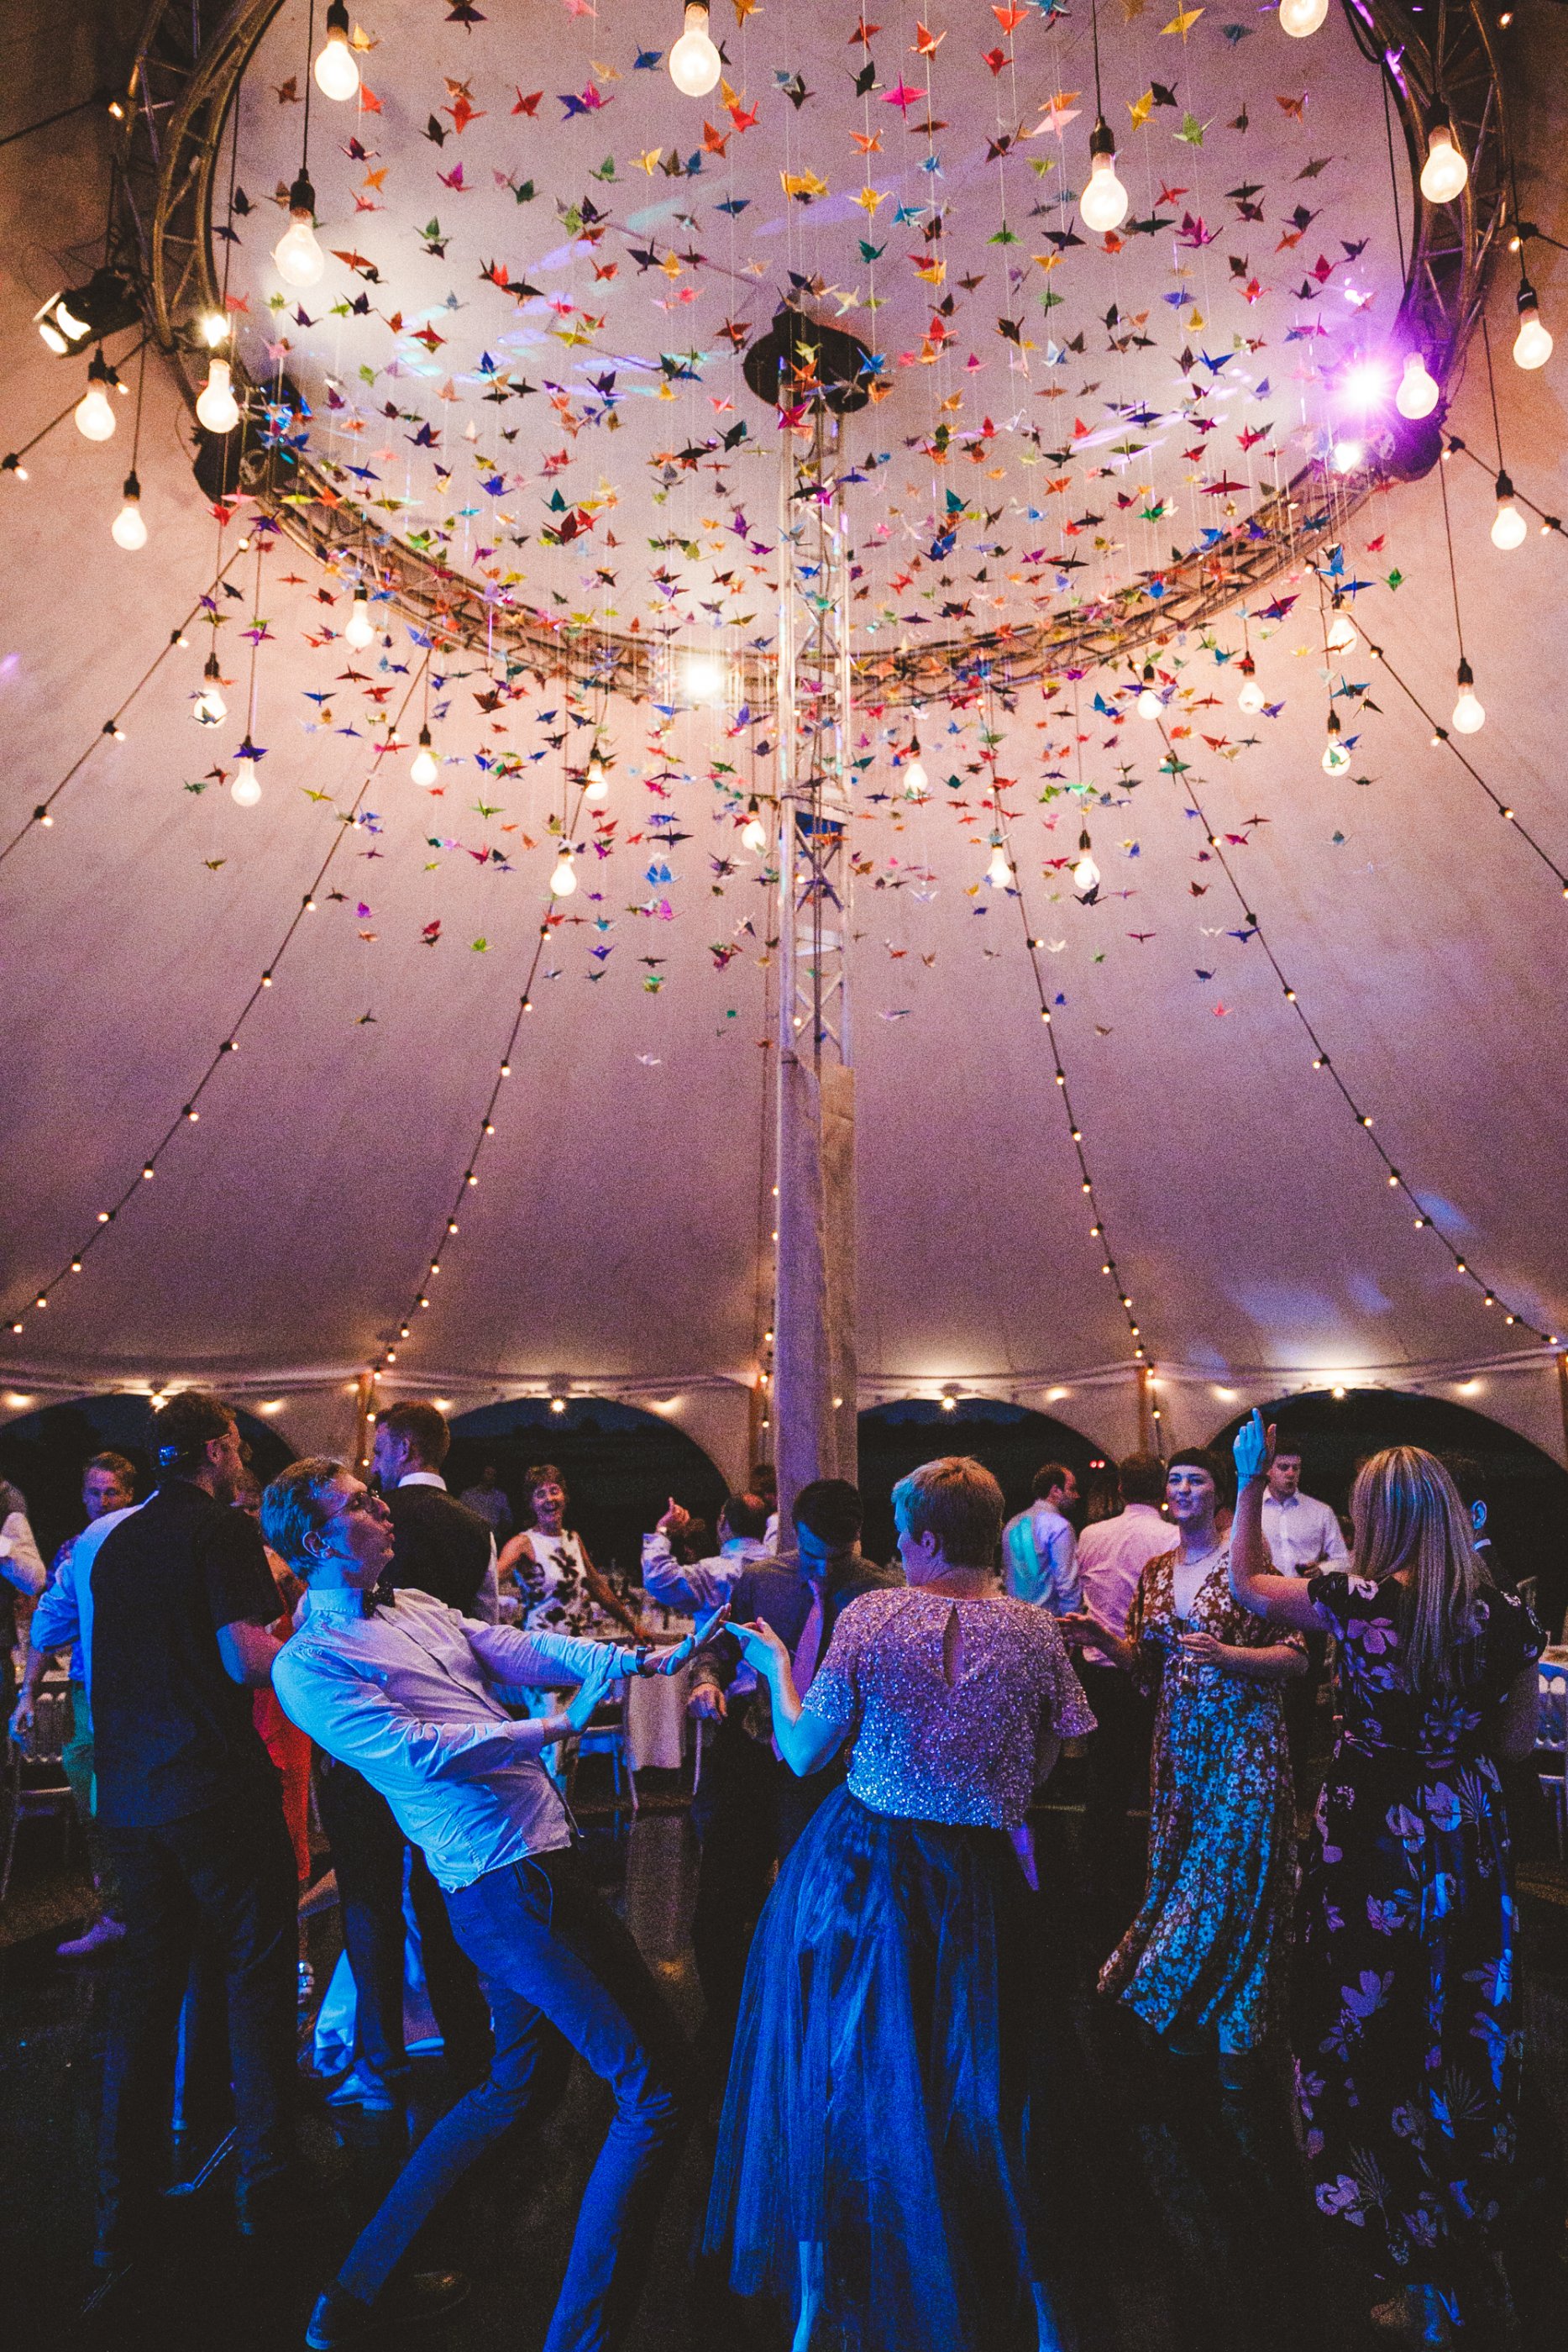 01 Wedding dance floor in tent with paper cranes